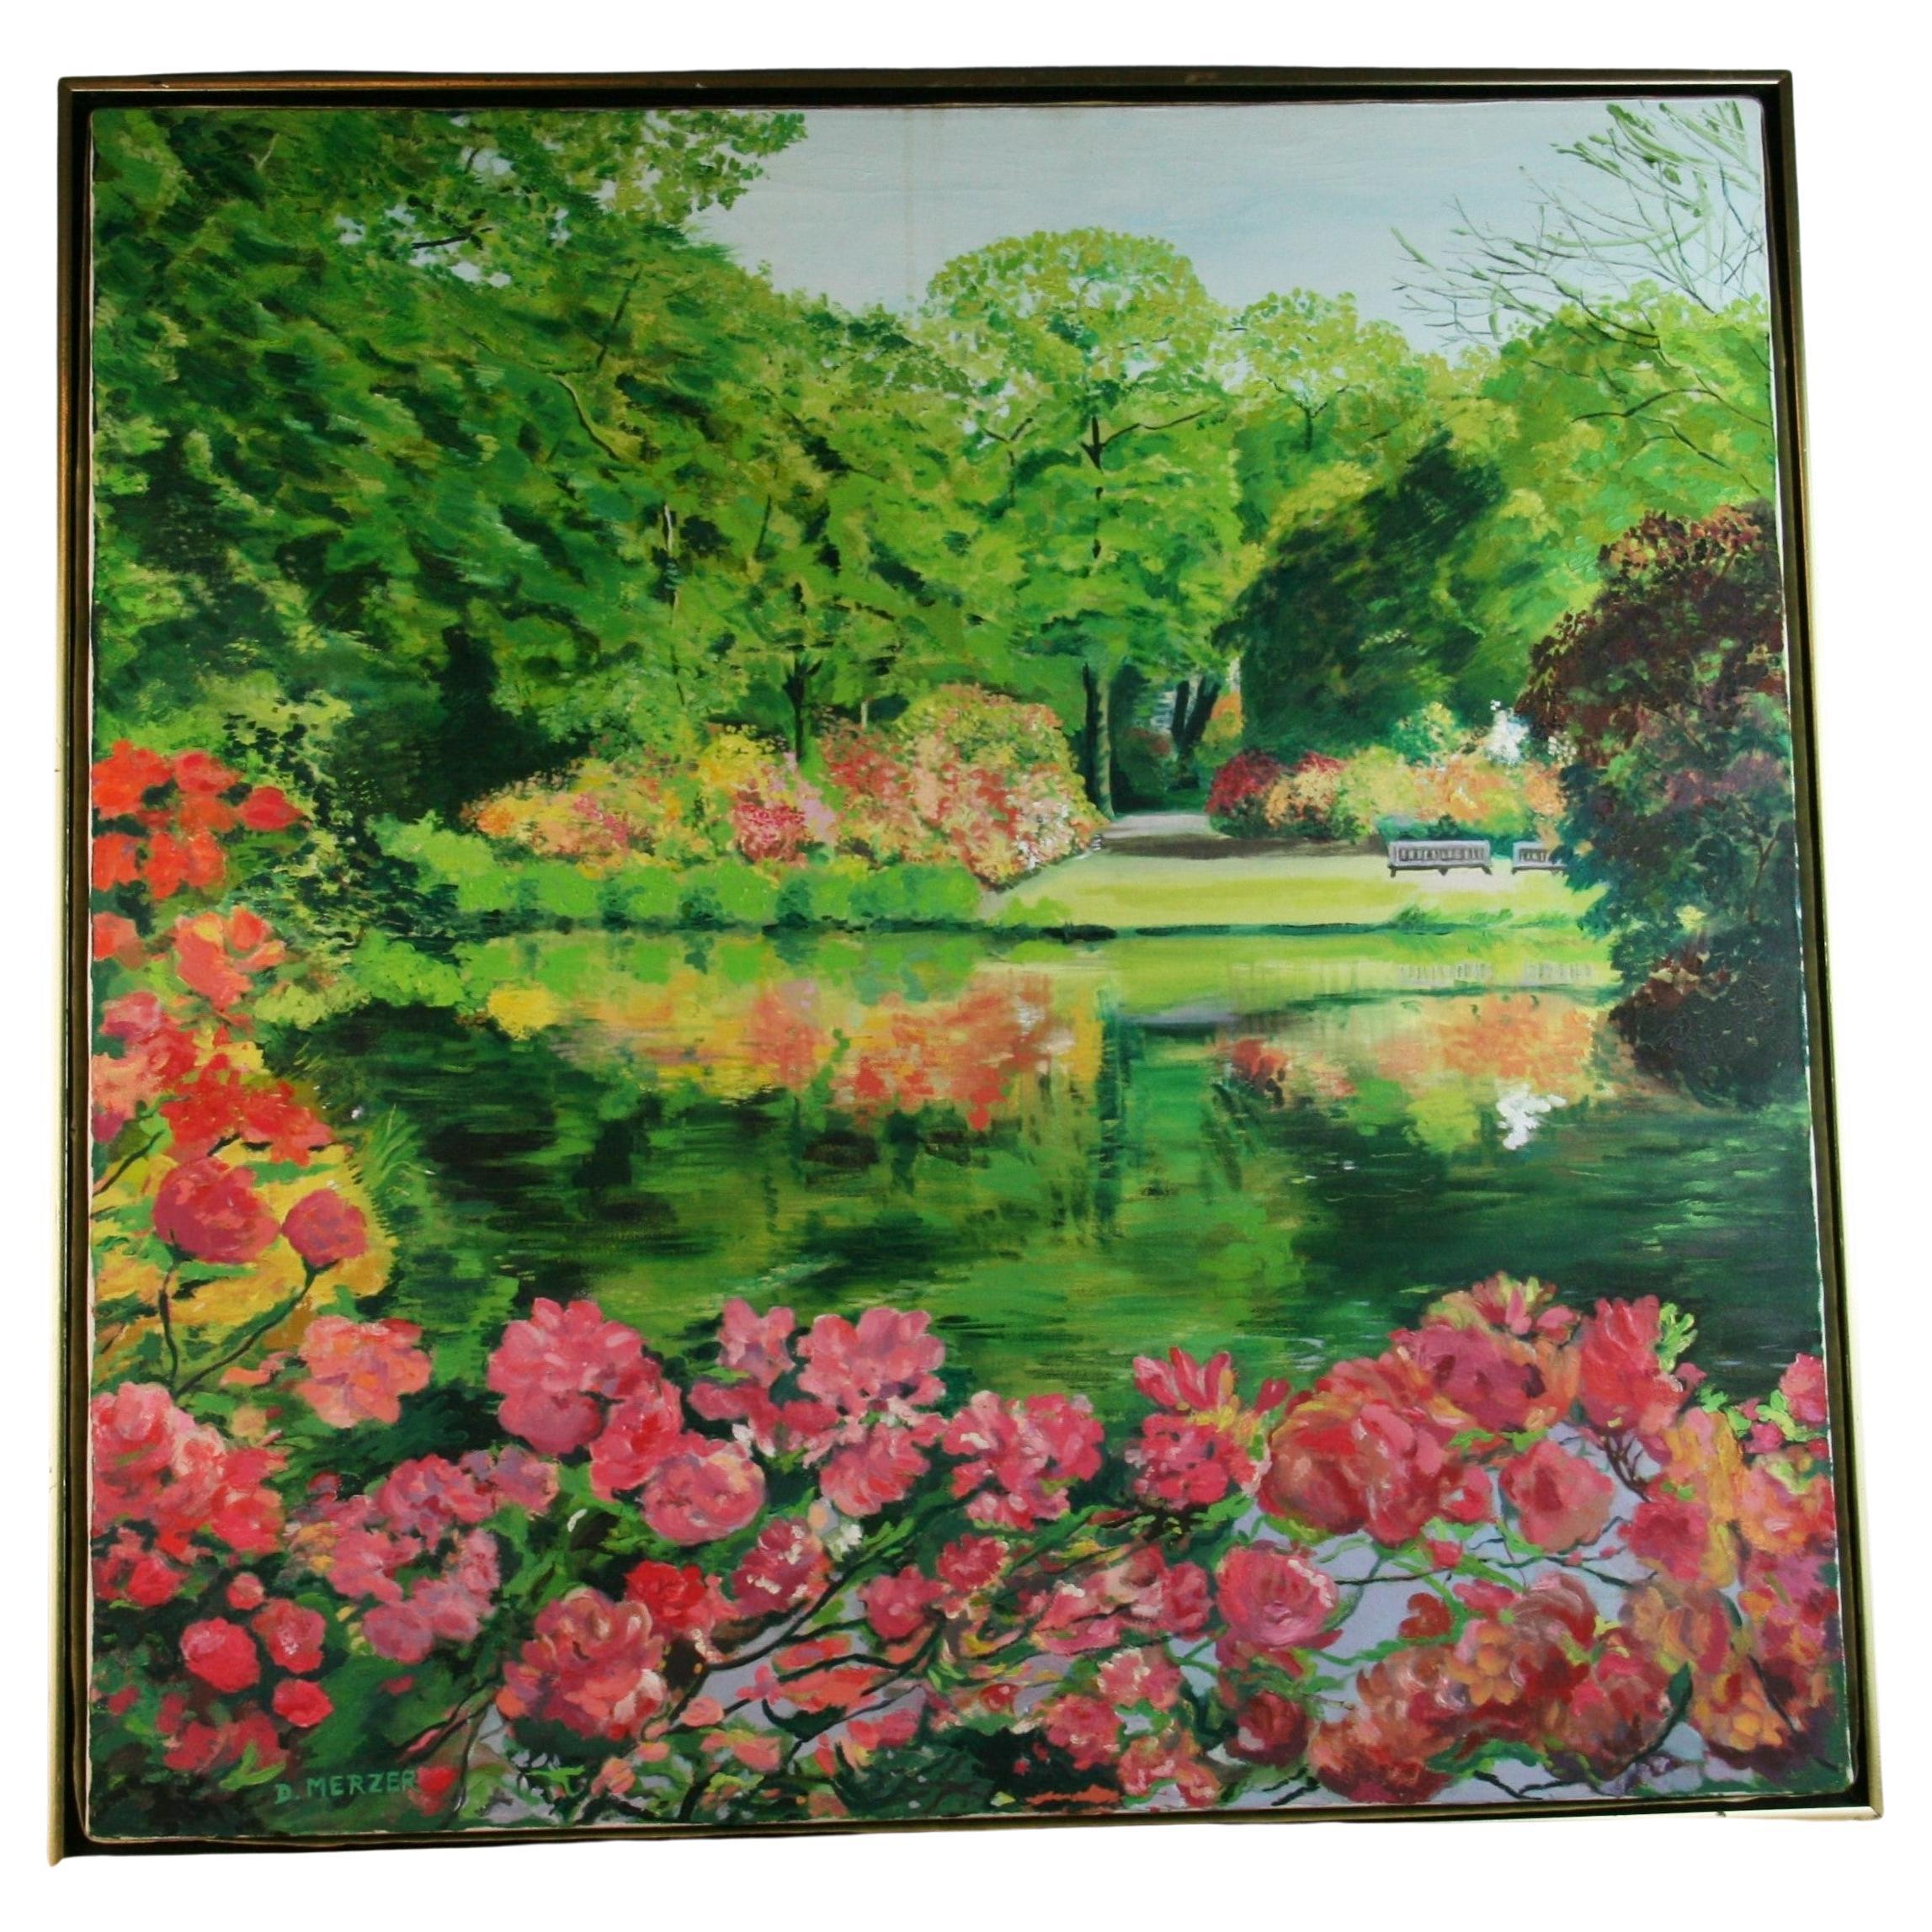 Grand paysage de jardin à fleurs impressionniste moderne, D.Merzer, 1984